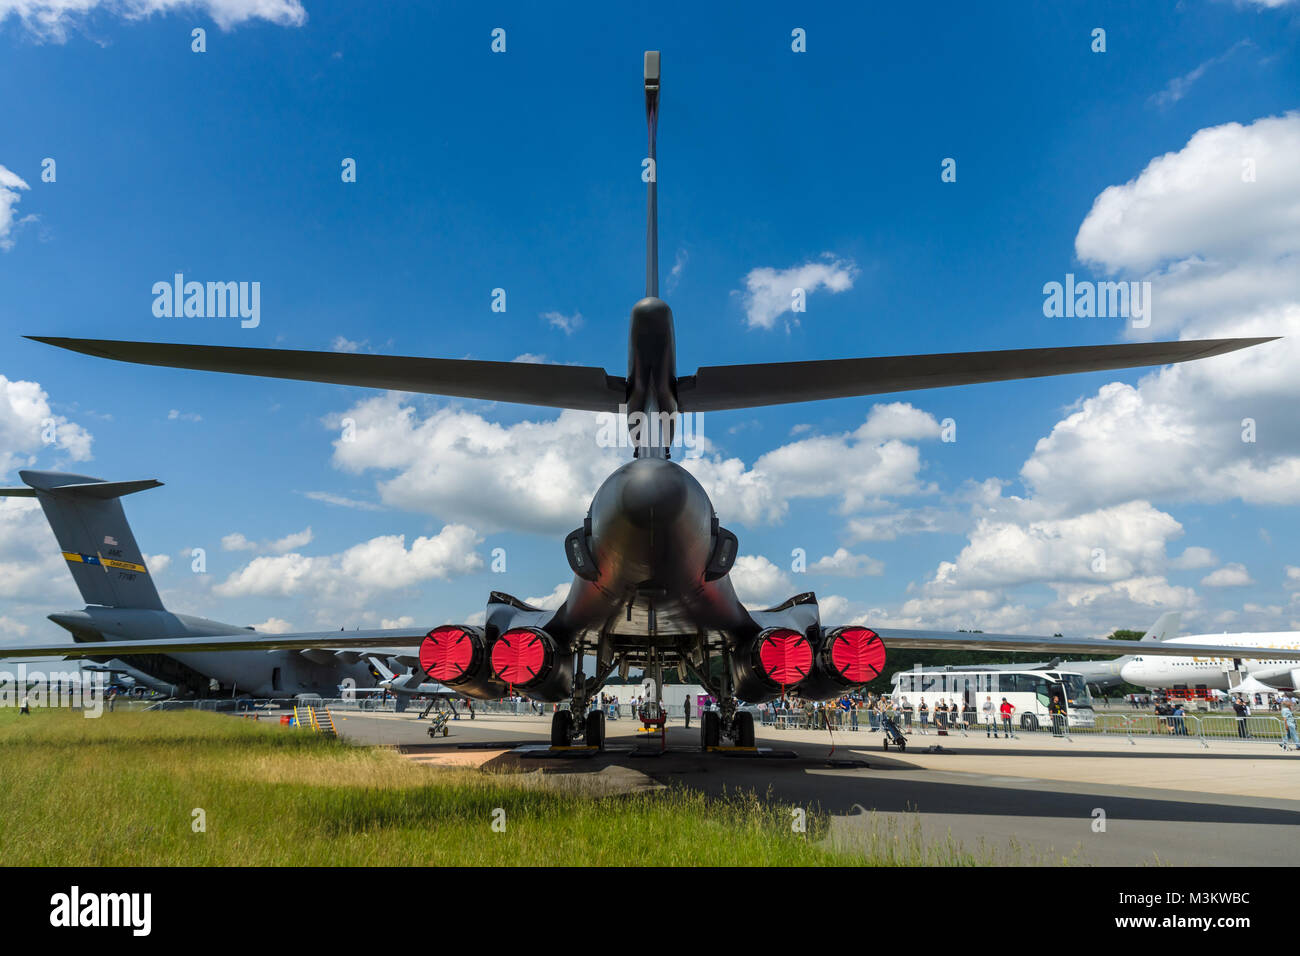 Berlín, Alemania - Junio 02, 2016: UN cuatro-motor supersónico de ala de barrido variable, jet-powered bombardero estratégico pesado Rockwell B-1B Lancer. La Fuerza Aérea de EE.UU. Vista trasera. Exposición ILA Berlin Air Show 2016 Foto de stock